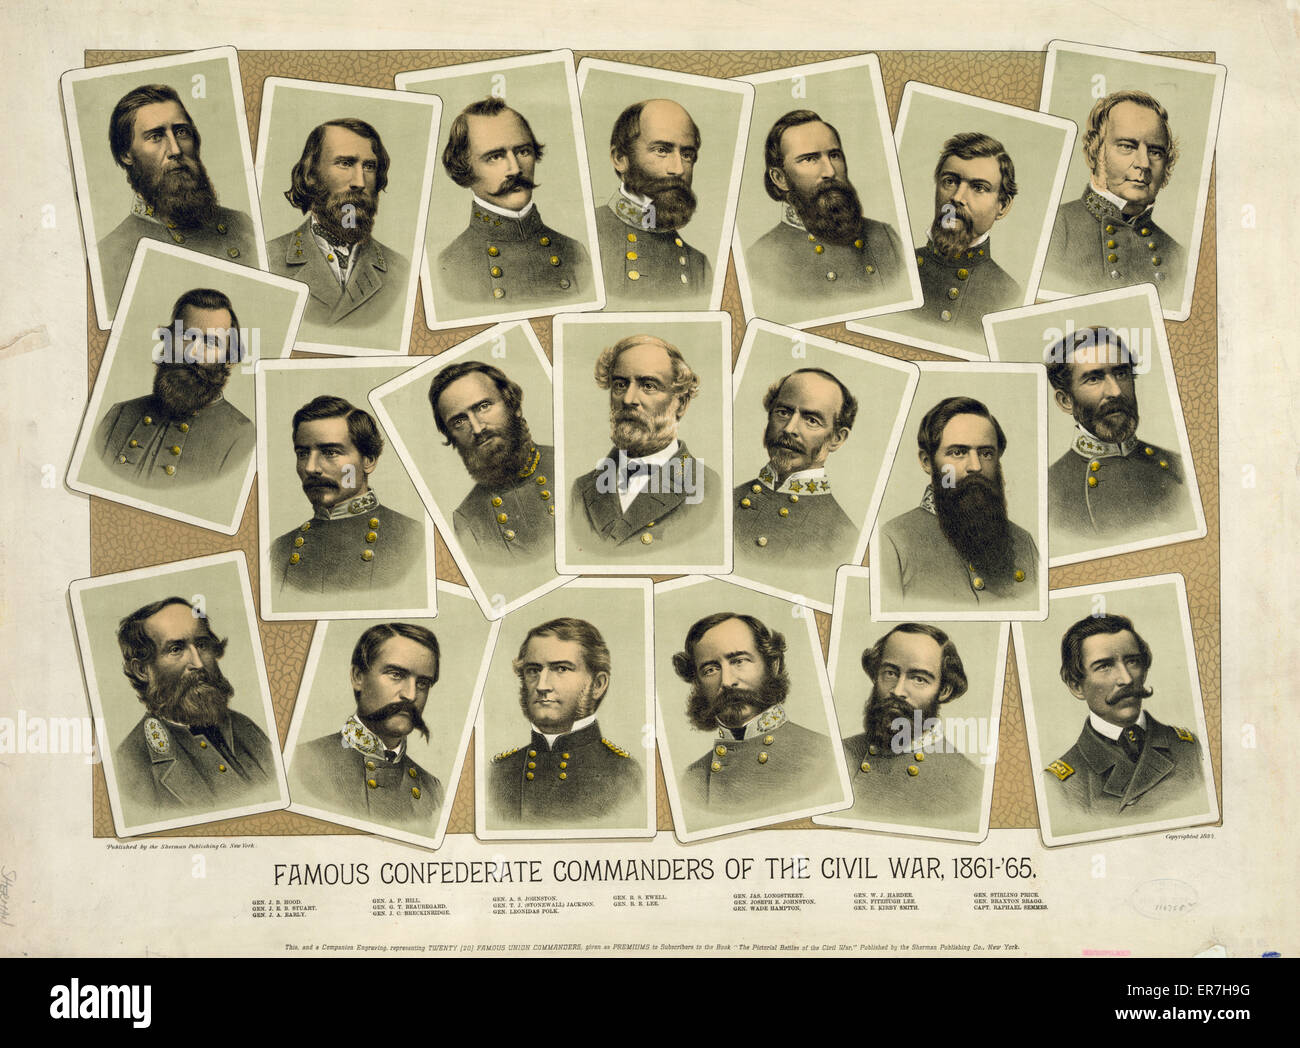 Les commandants confédéré célèbre de la guerre civile, 1861-'65 Banque D'Images